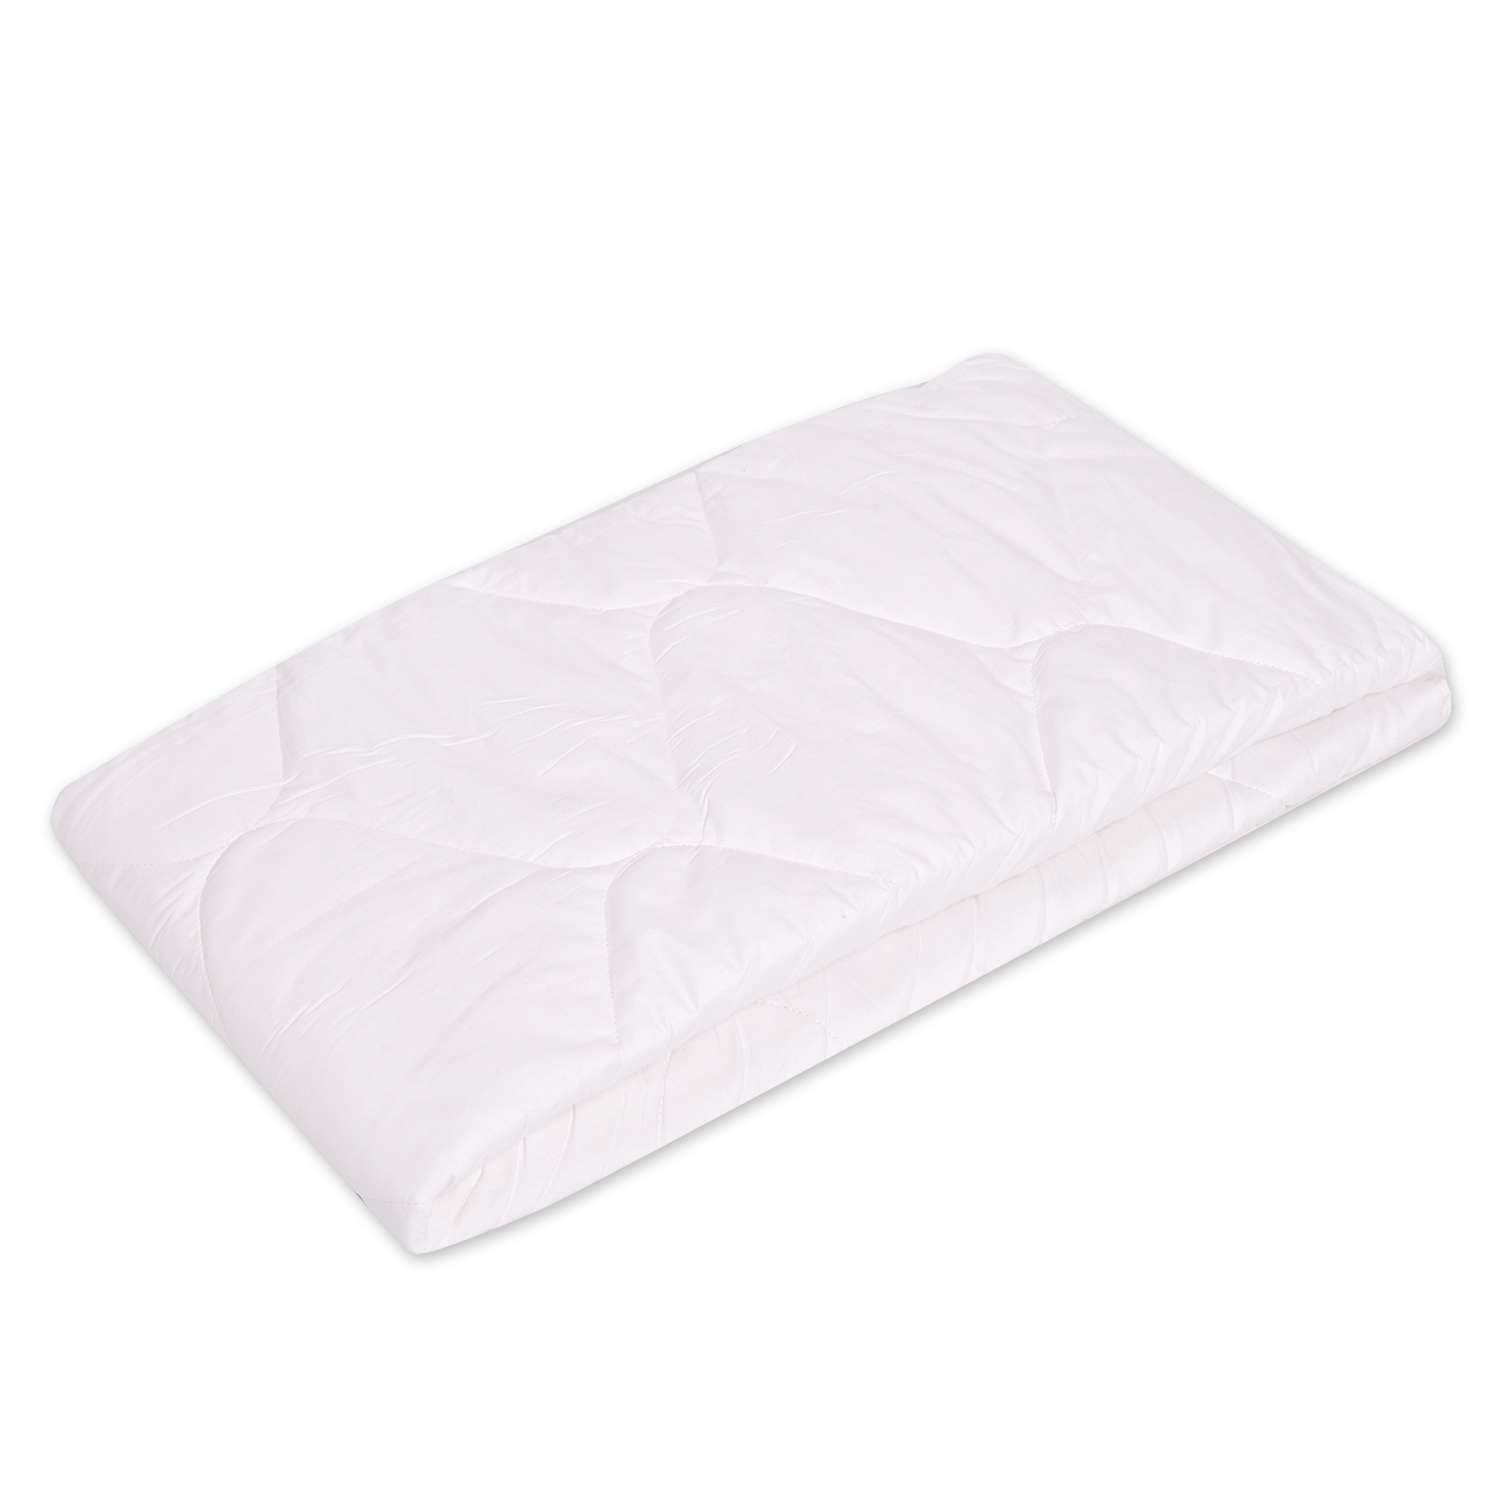 Одеяло Babyton стеганное легкое Белое С111523 - фото 1